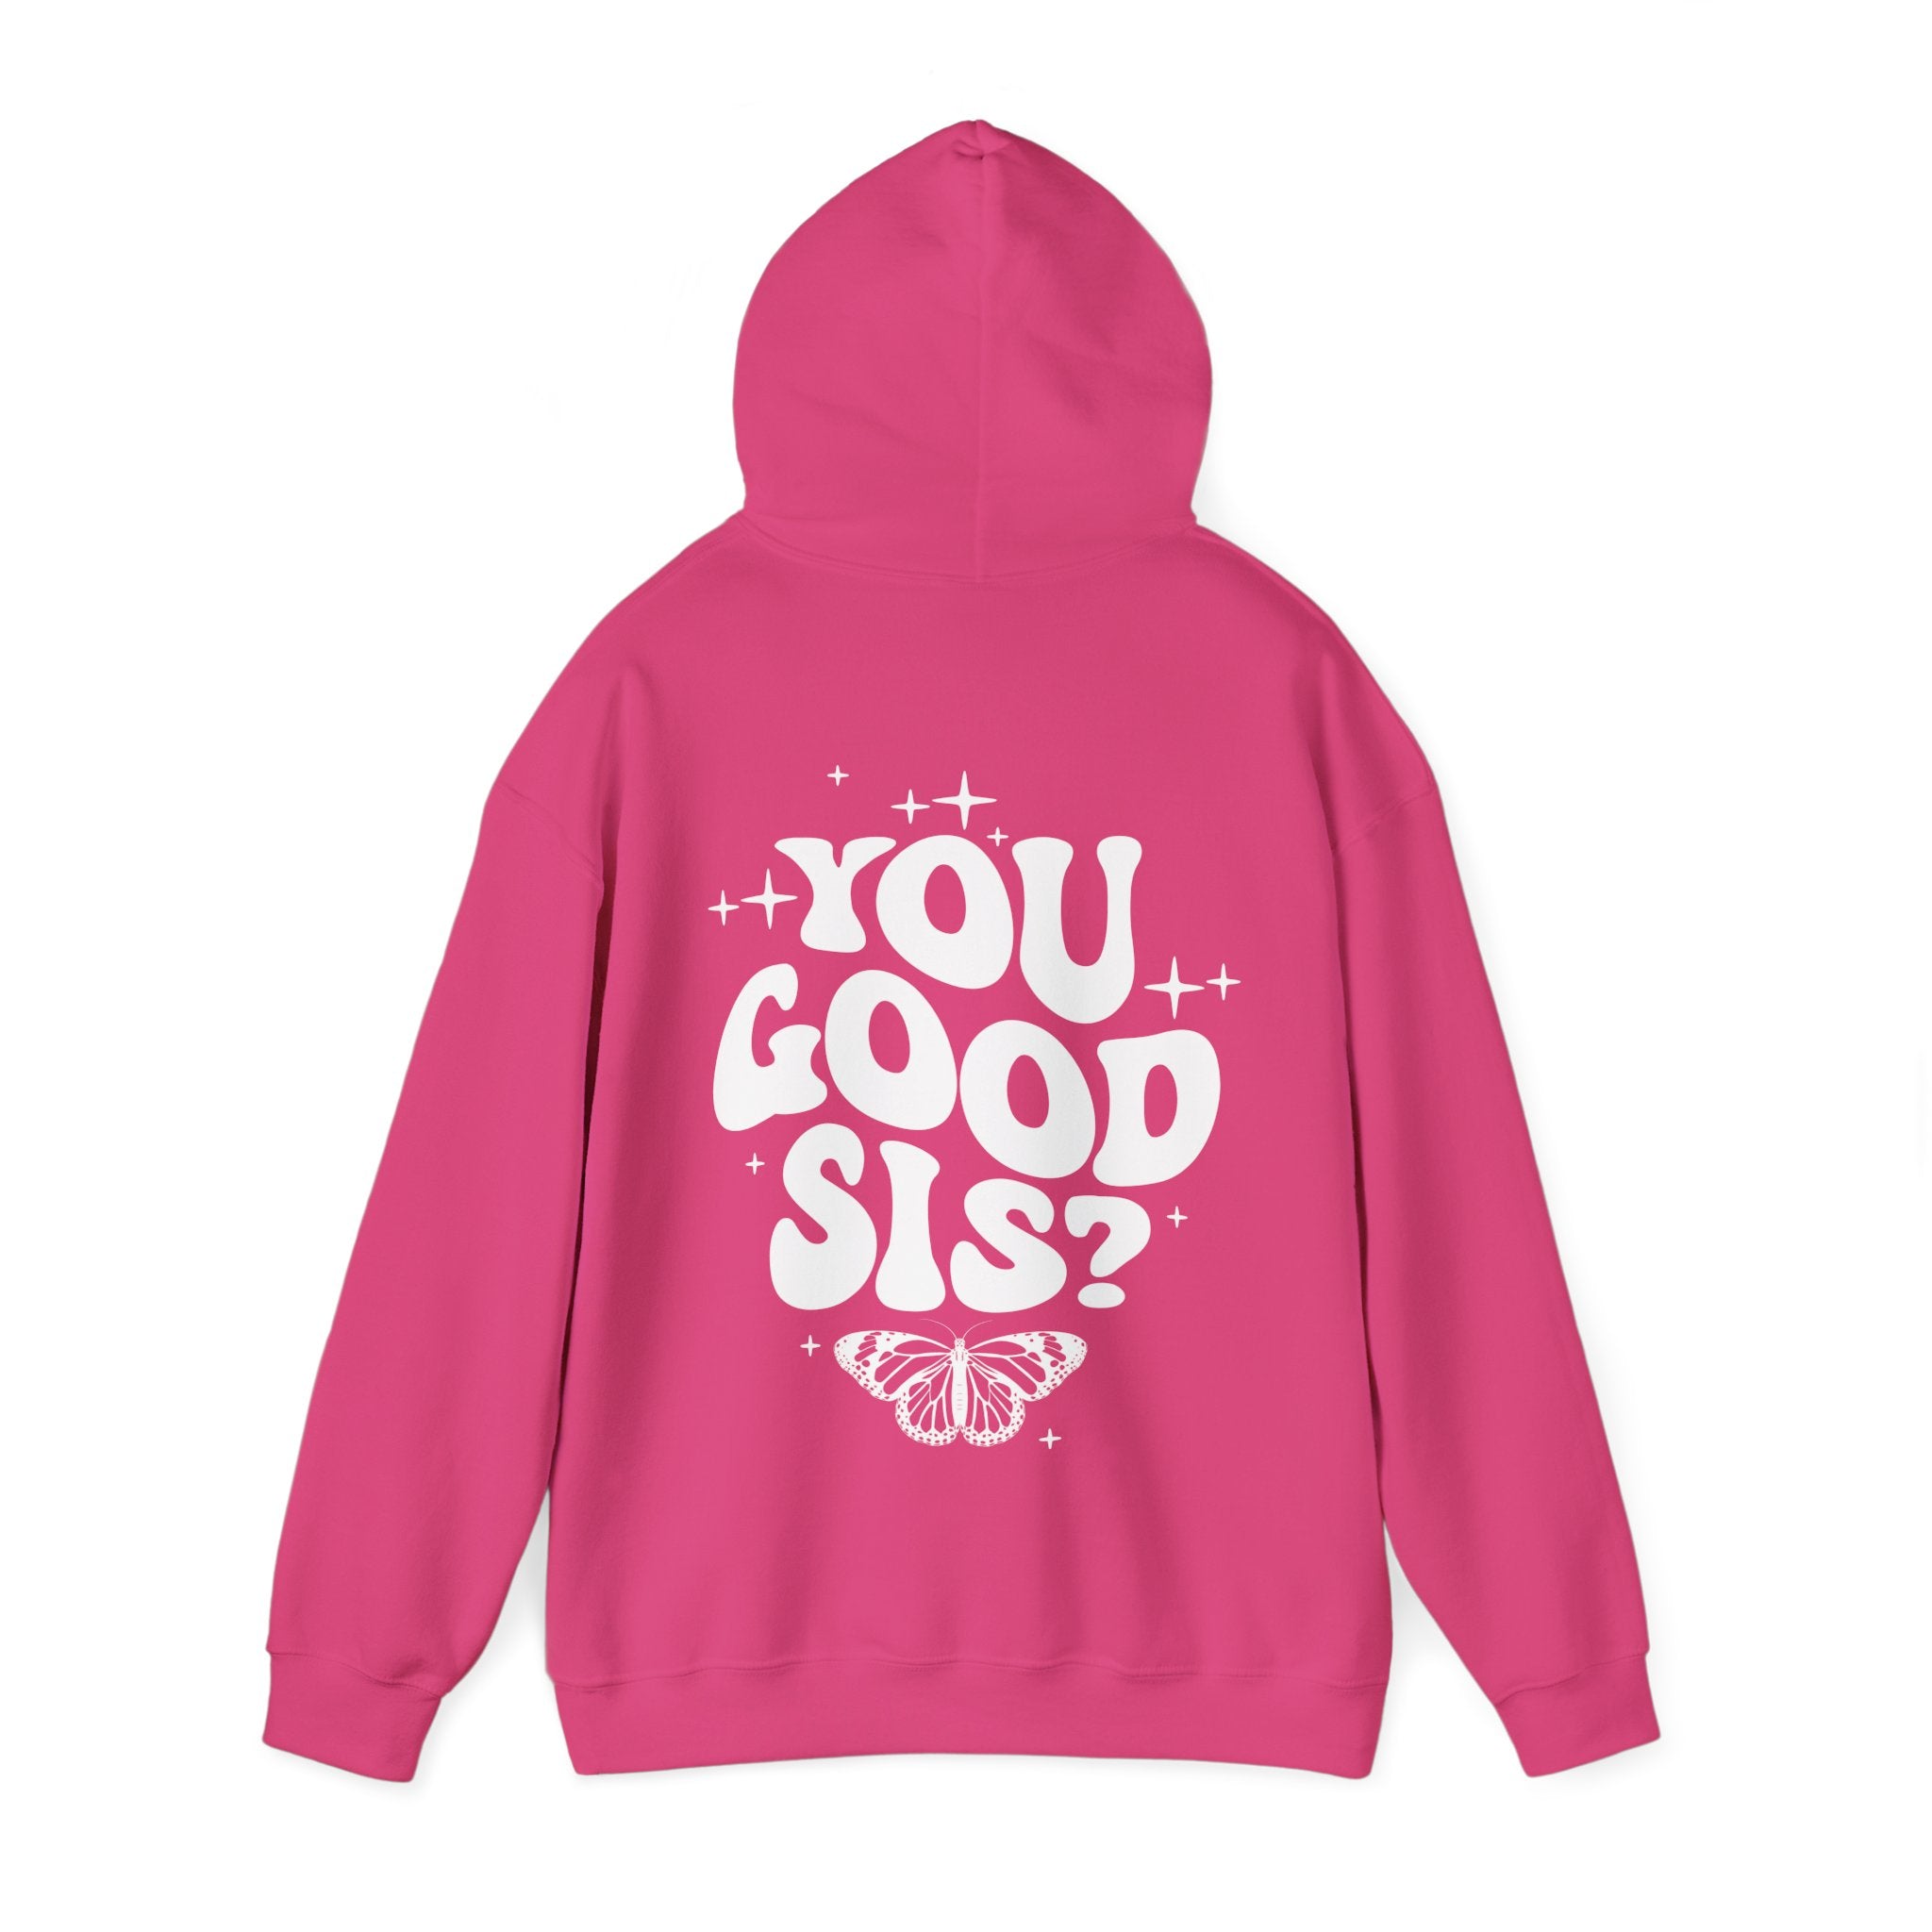 You Good Sis Hooded Sweatshirt